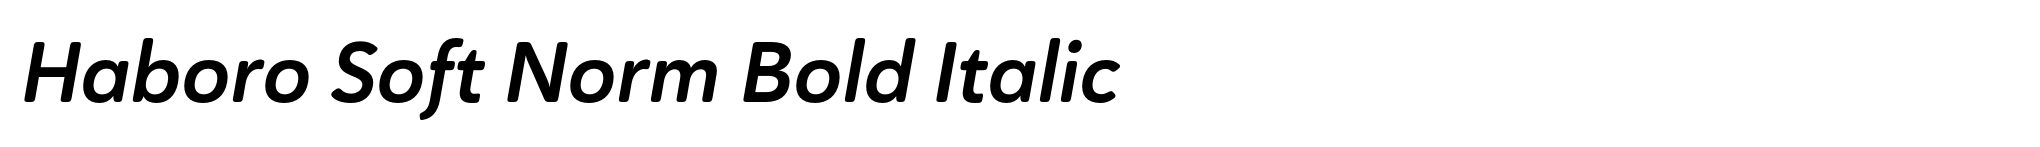 Haboro Soft Norm Bold Italic image